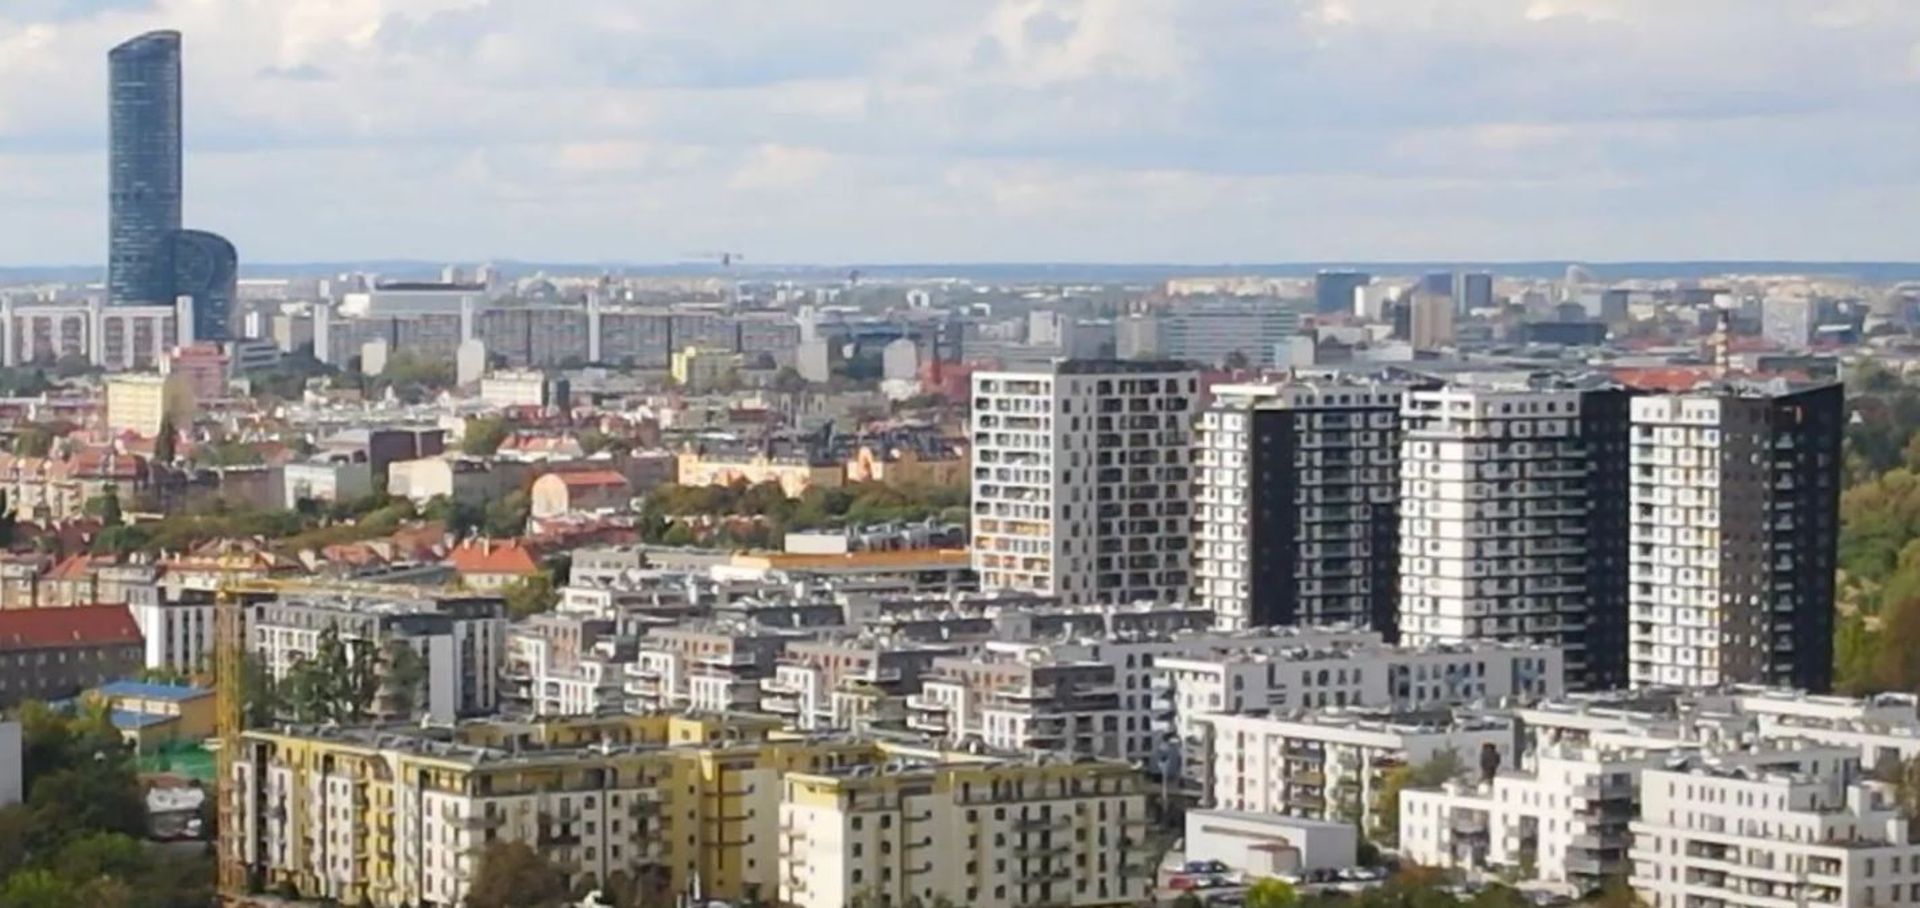 Duży wybór mieszkań, stabilne ceny i brak niespodzianek na rynku pierwotnym we Wrocławiu